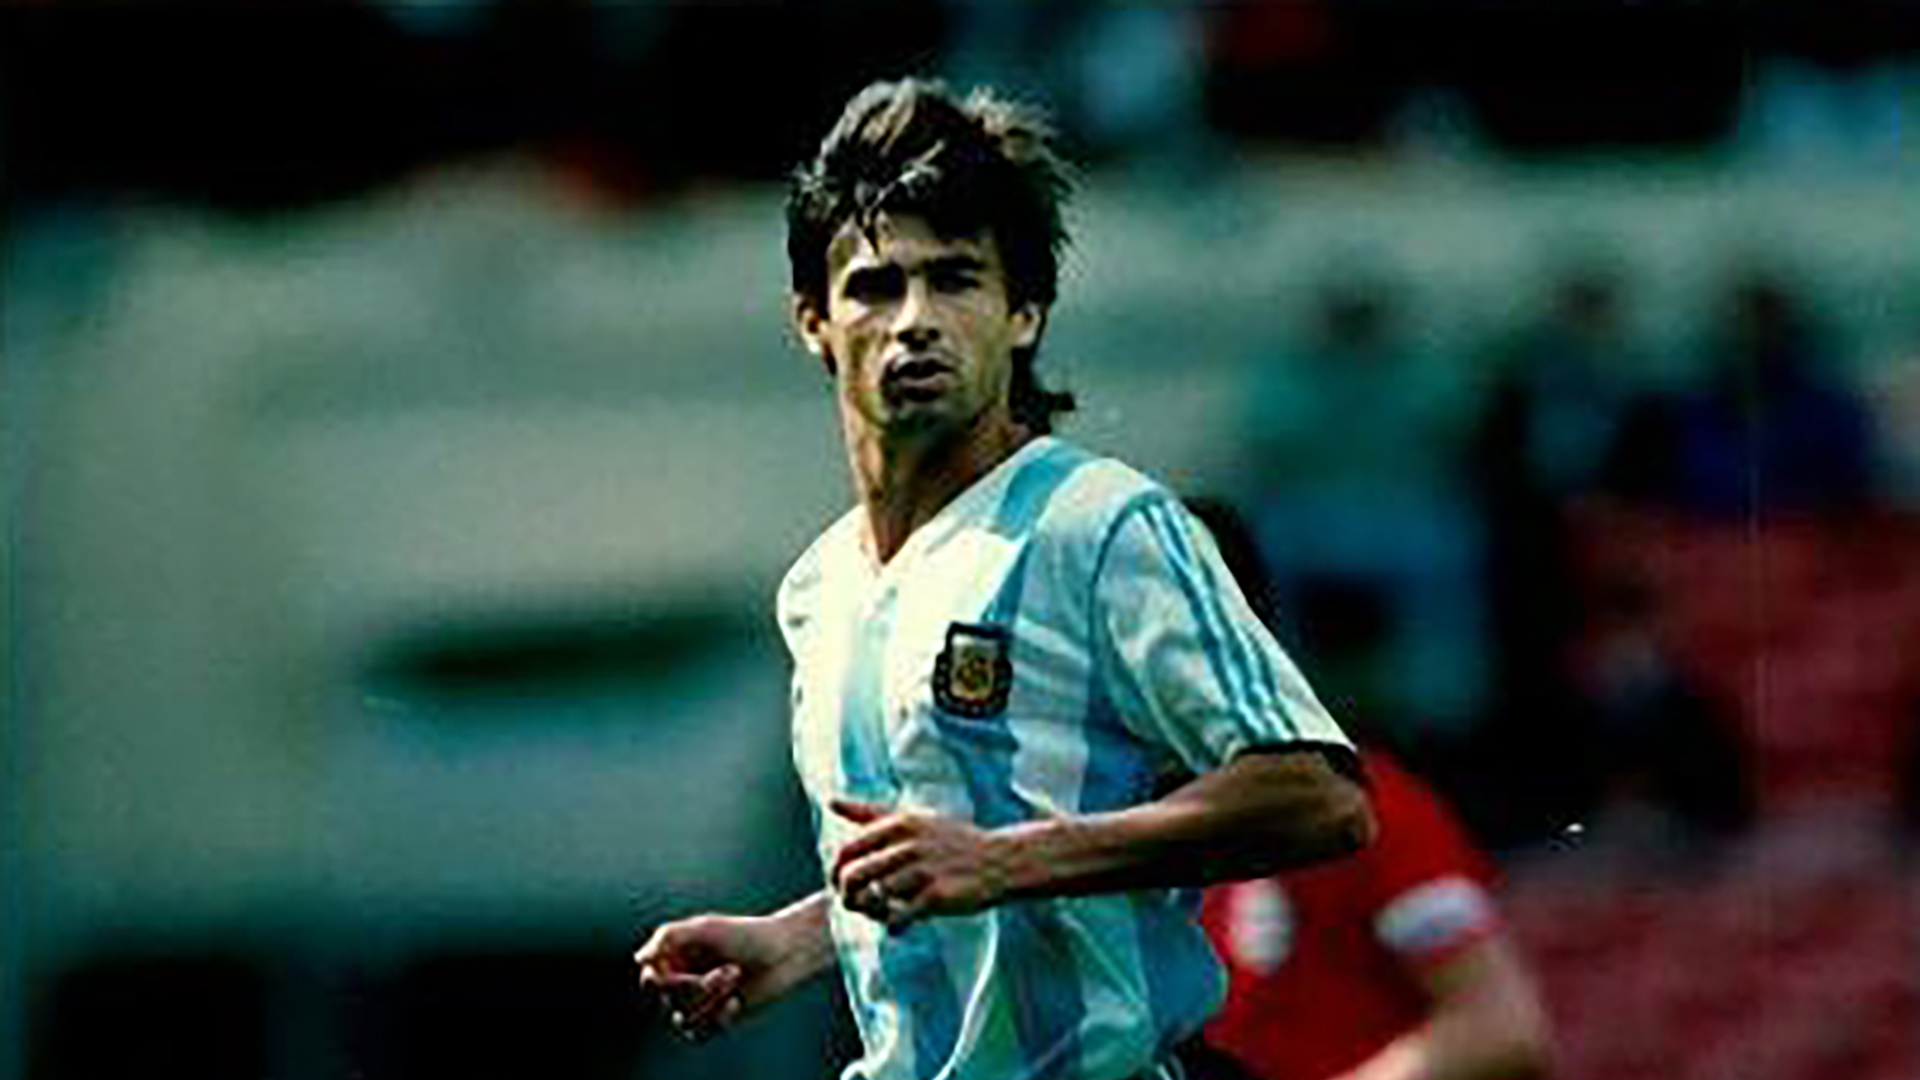 Nació en Calchín, jugó en la Selección y se emociona ante Julián Álvarez: “Después de Messi, es el mejor por lejos”